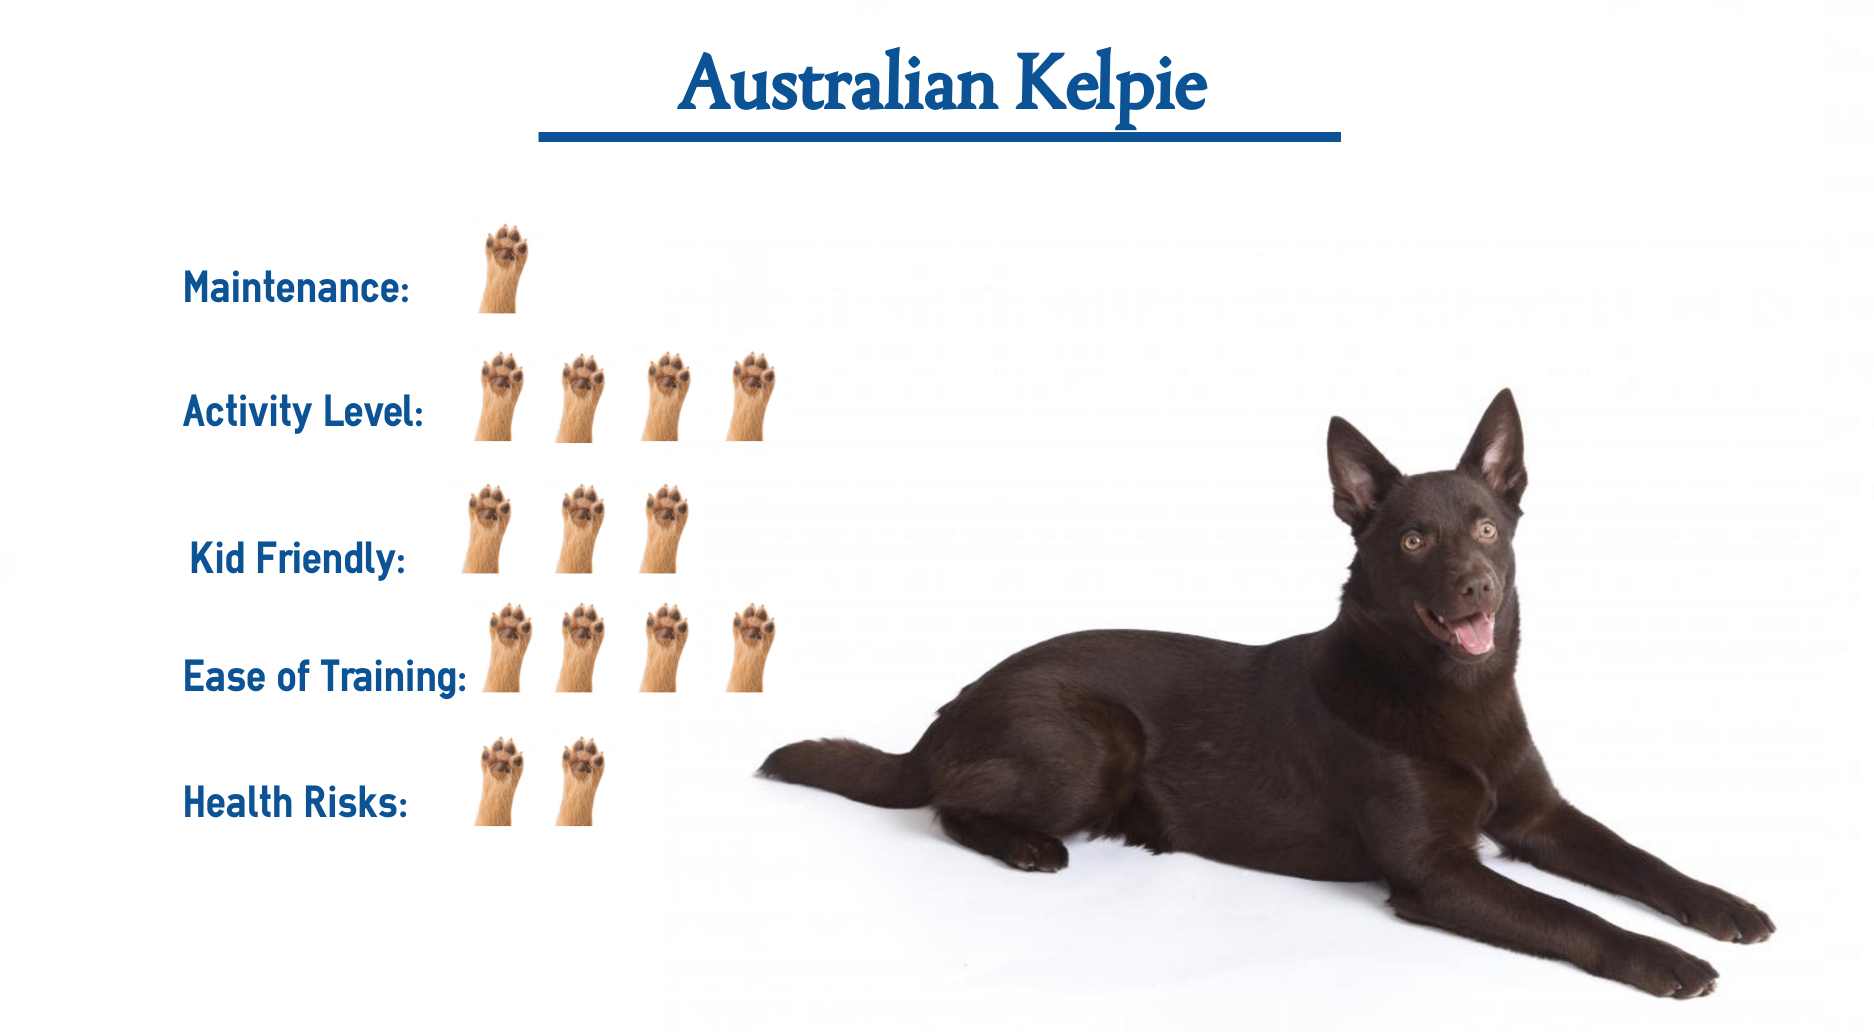 Australian Kelpie dog breed